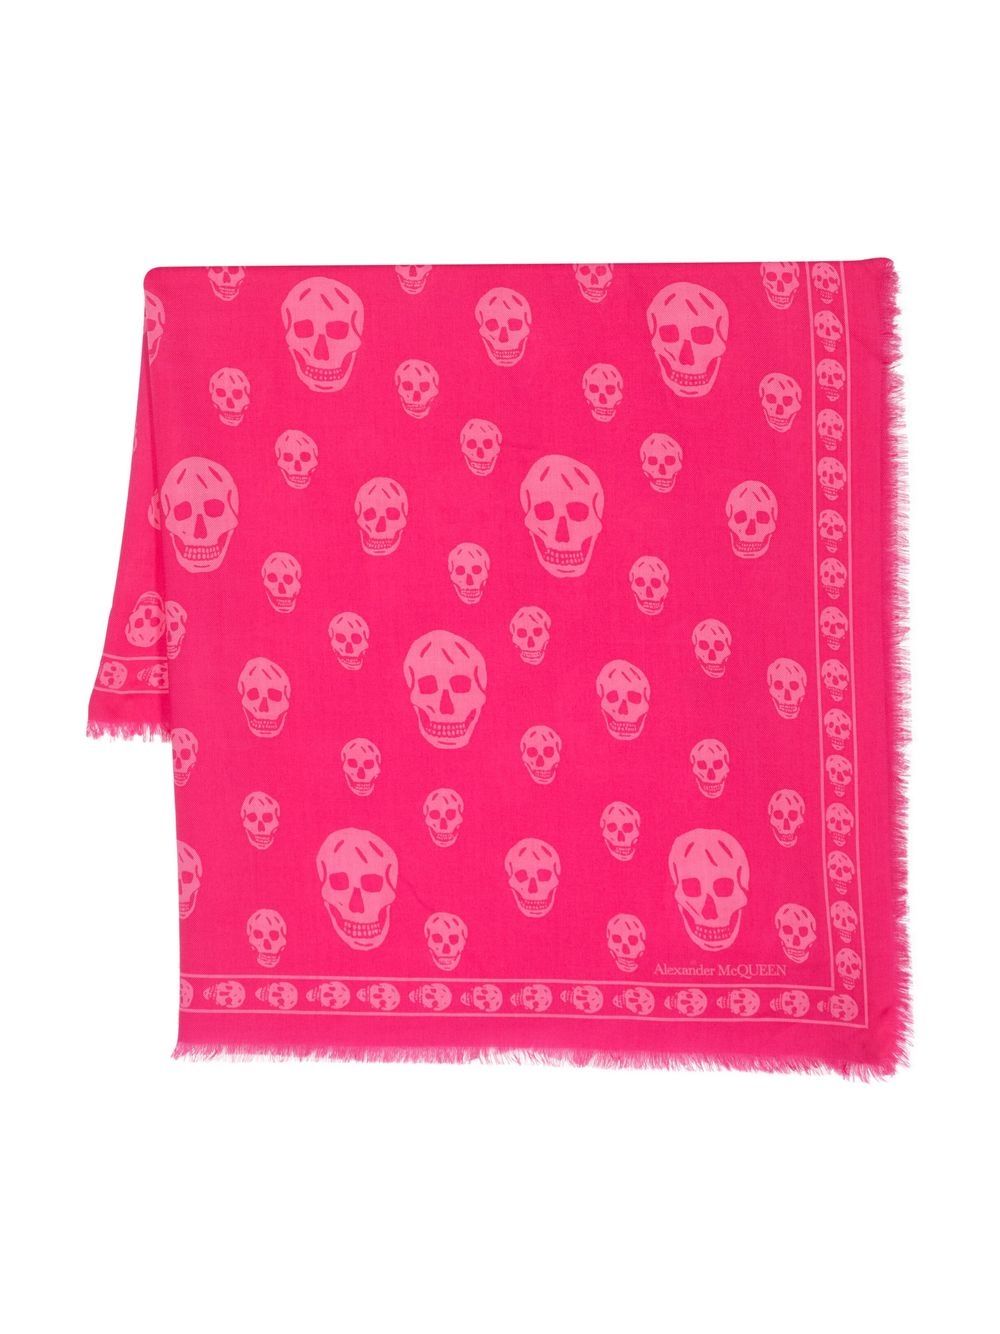 Alexander Mcqueen Skull 印花羊毛围巾 In Pink